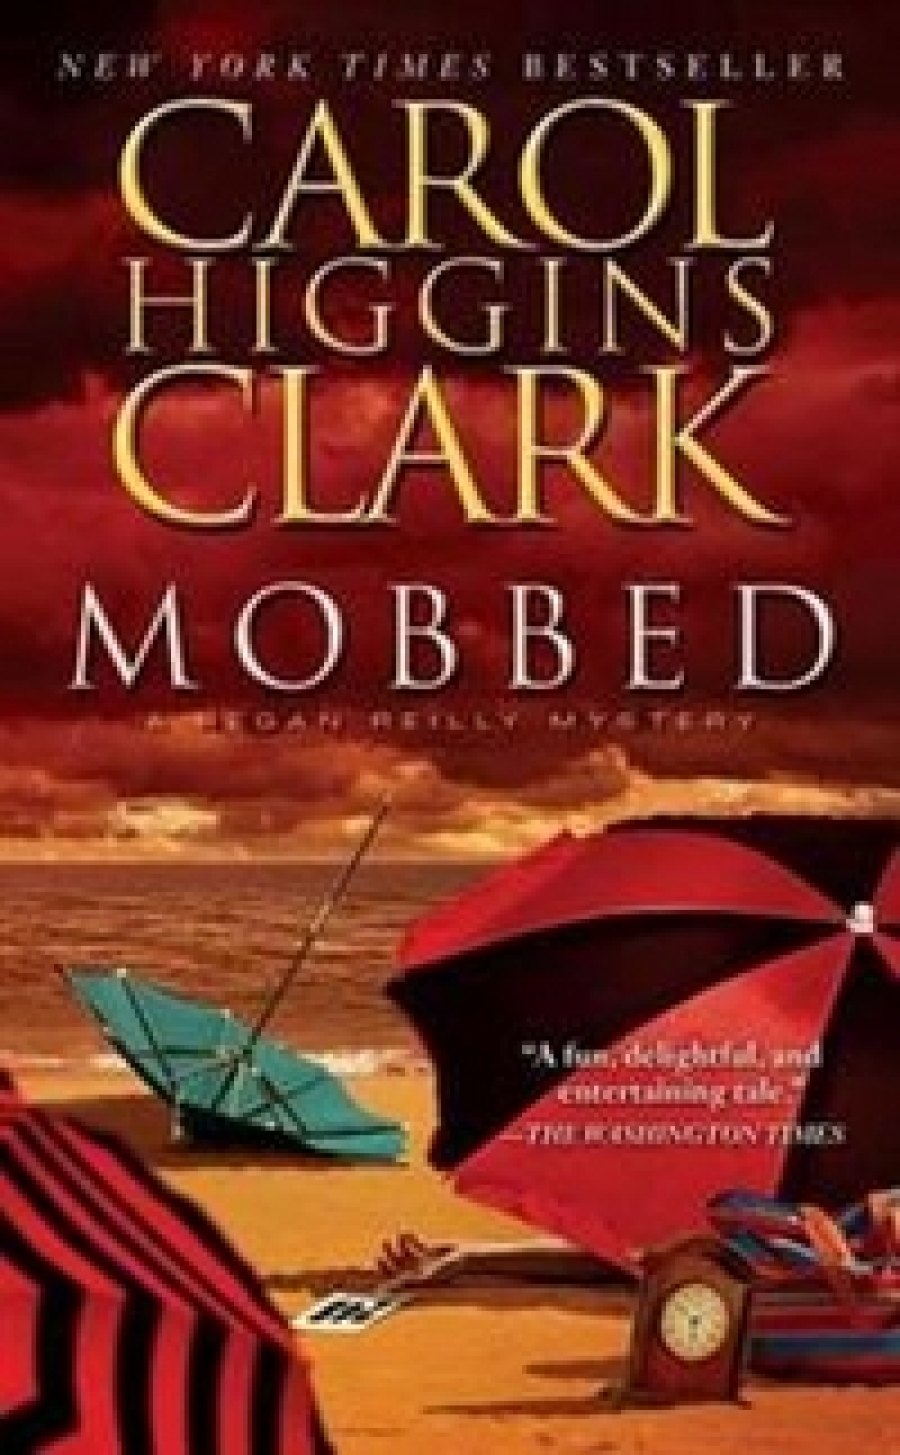 Carol, Higgins Clark Mobbed  (MM)  NY Times bestseller 